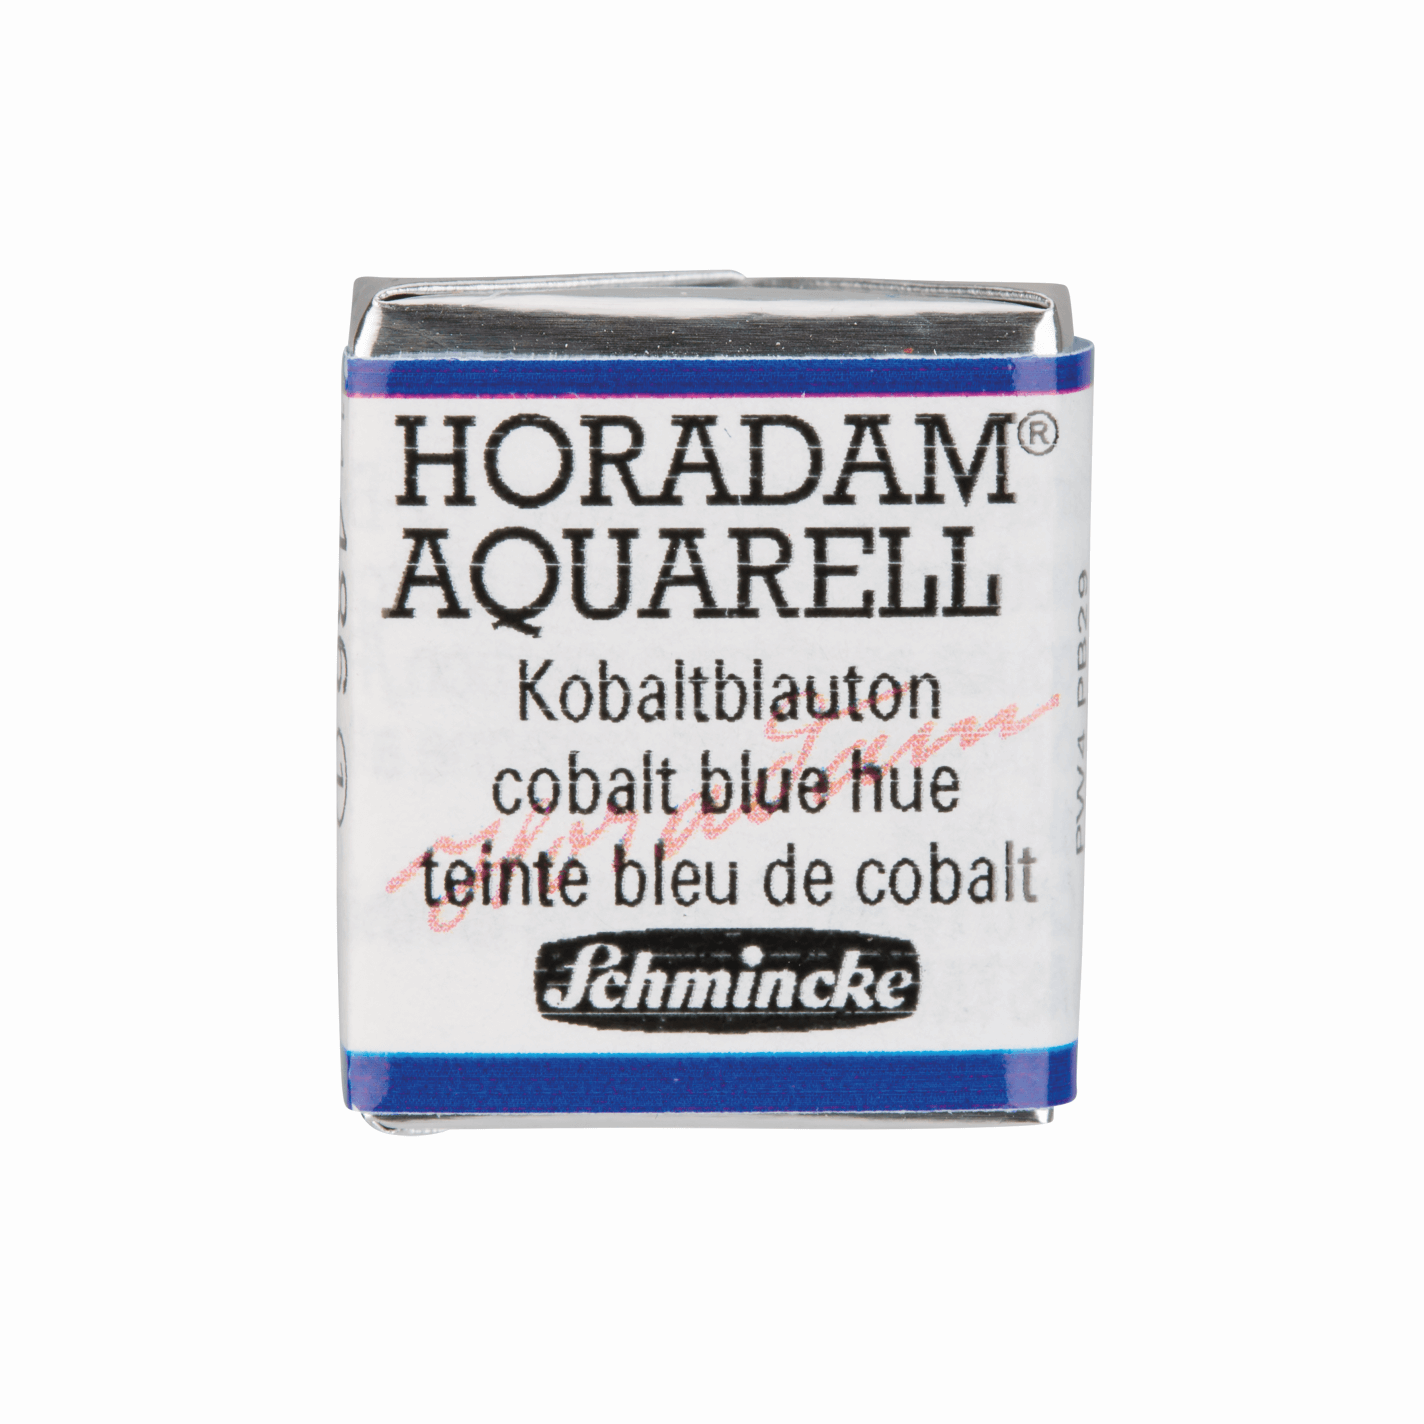 Schmincke Horadam Aquarell pans Cobalt Blue Hue